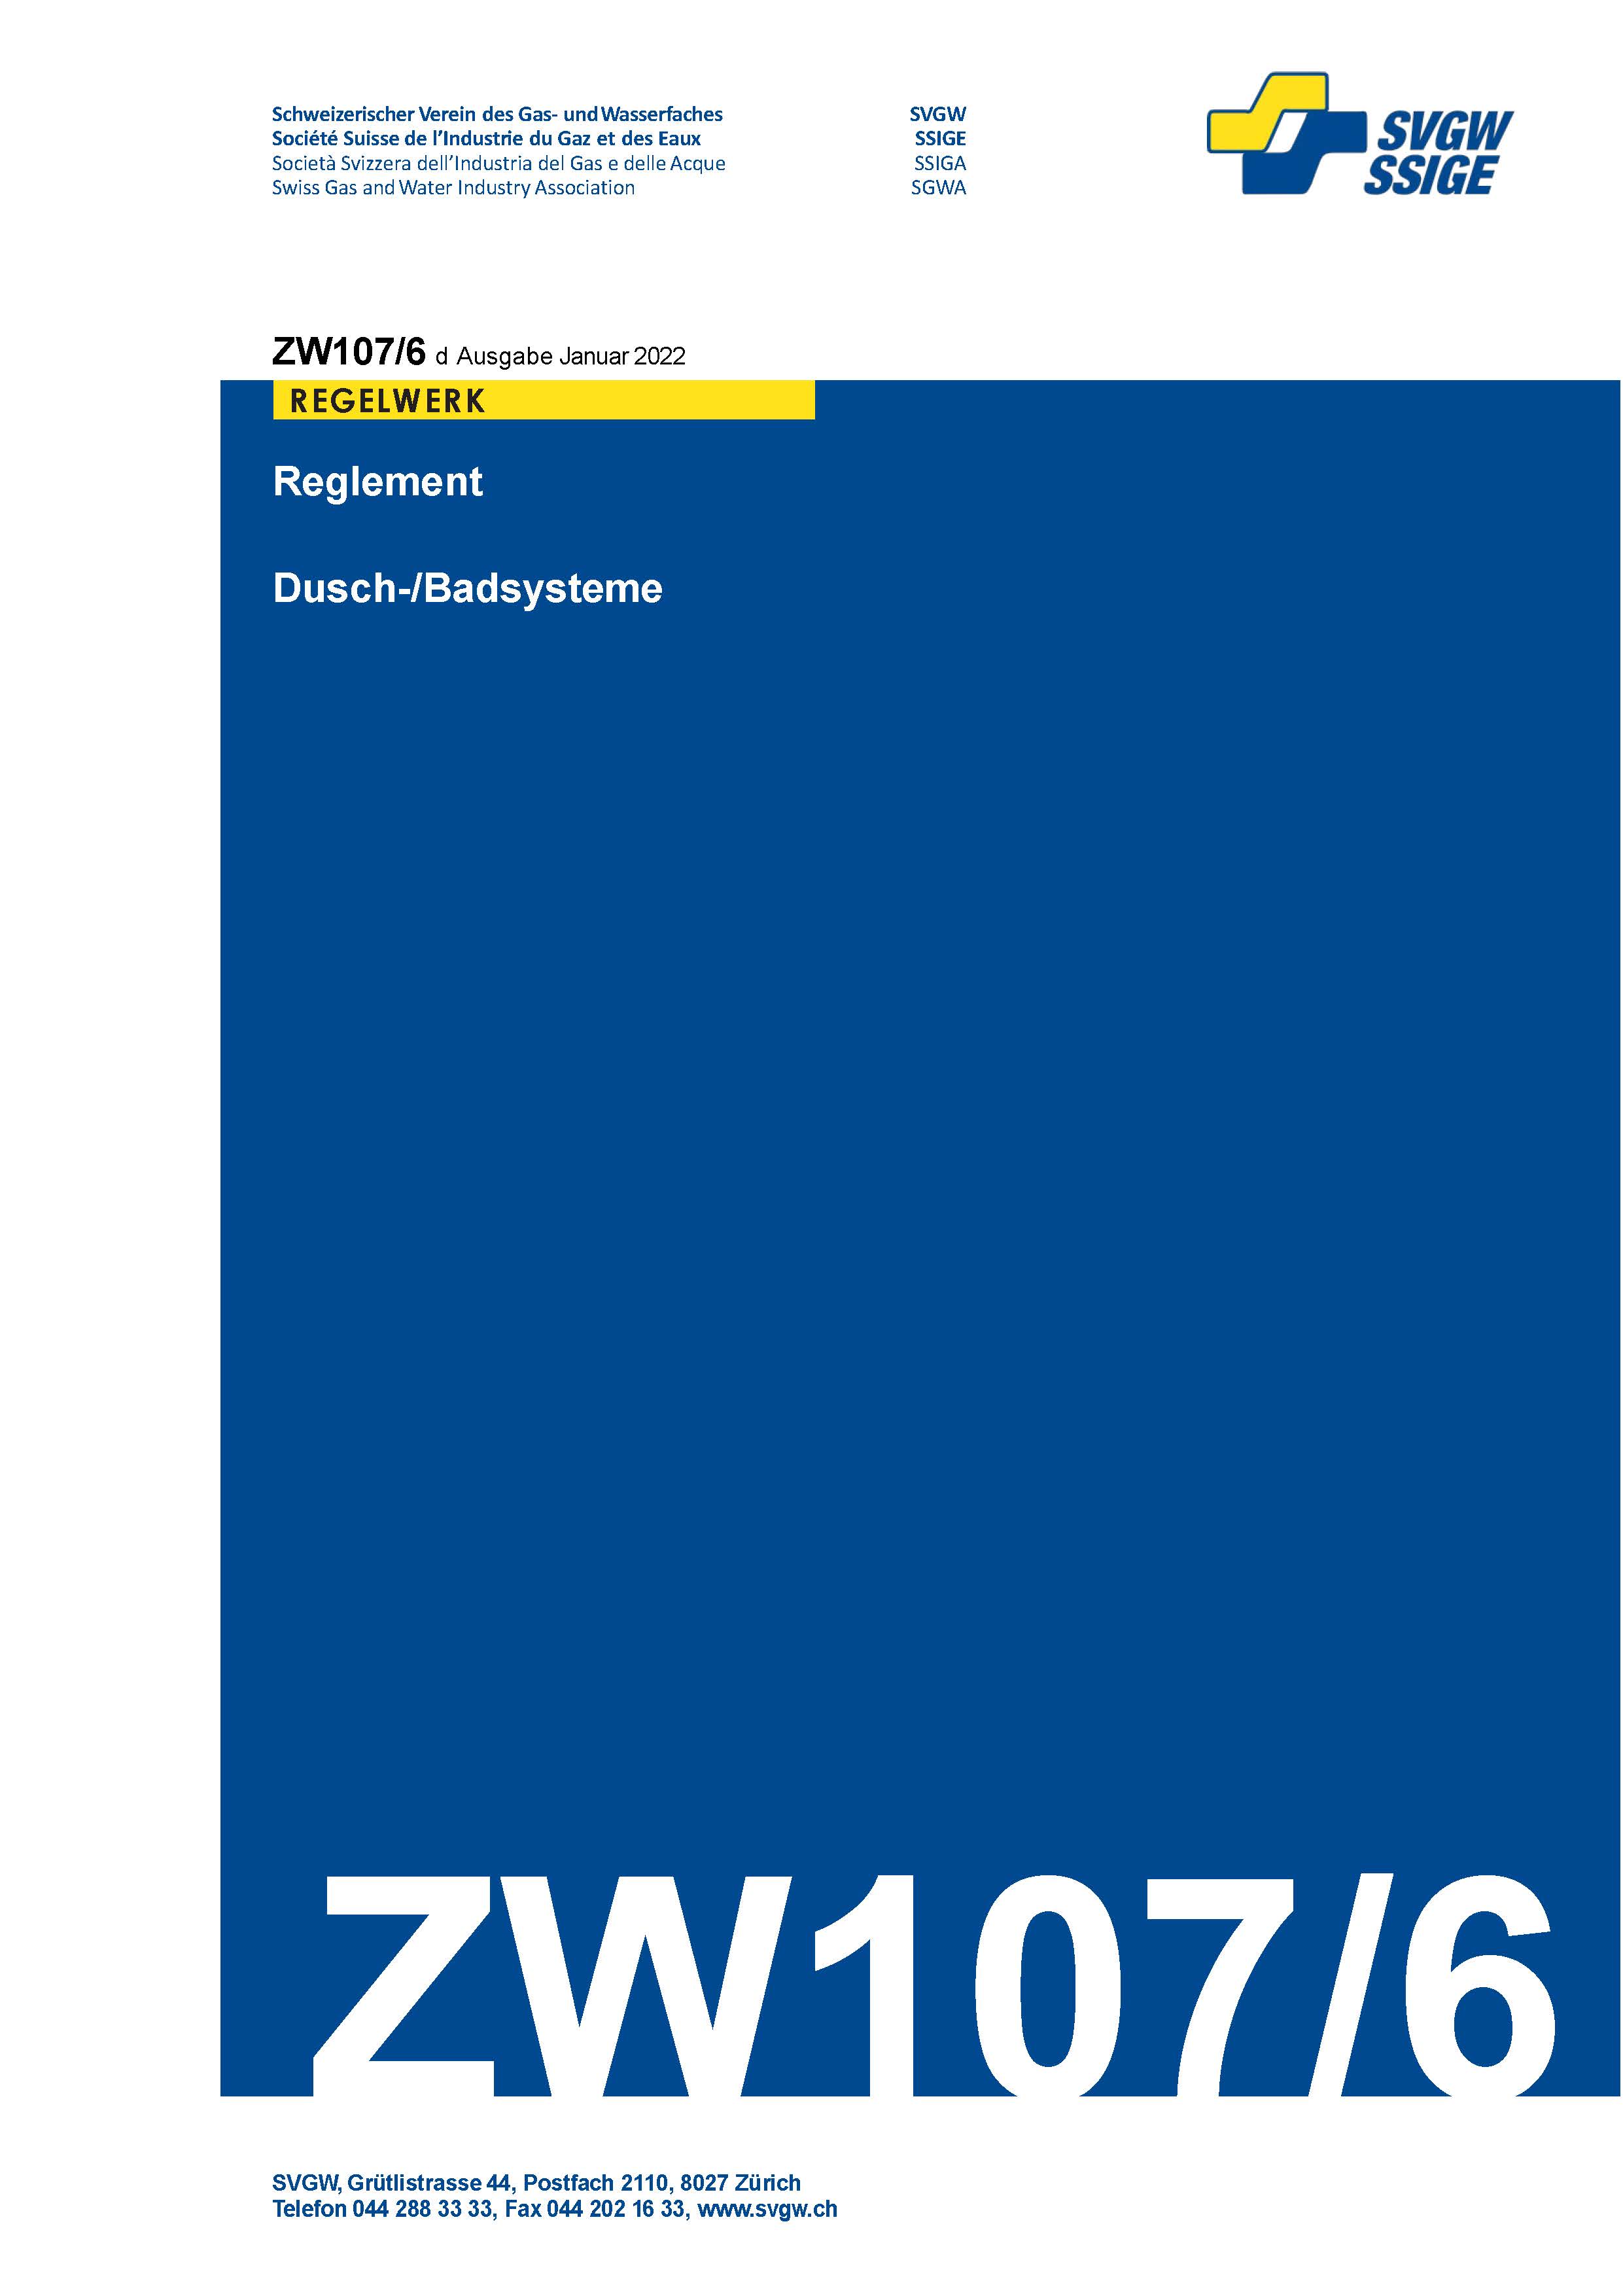 ZW107/6 d - Reglement; Dusch-/Badsysteme